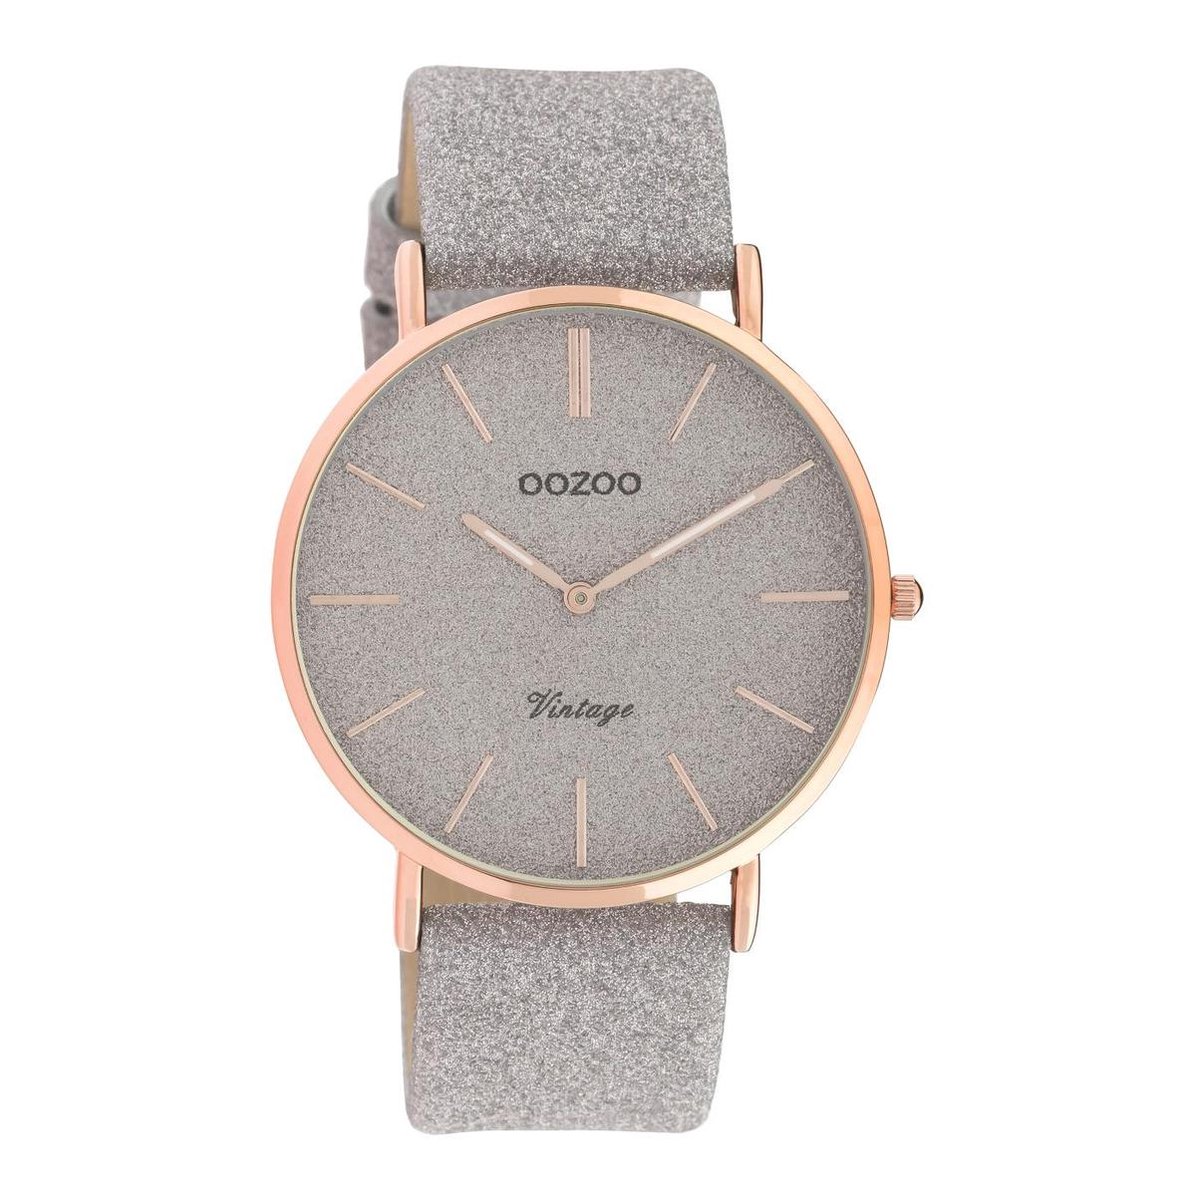 OOZOO Vintage series - Rosé gouden horloge met taupe leren band - C20162 - Ø40